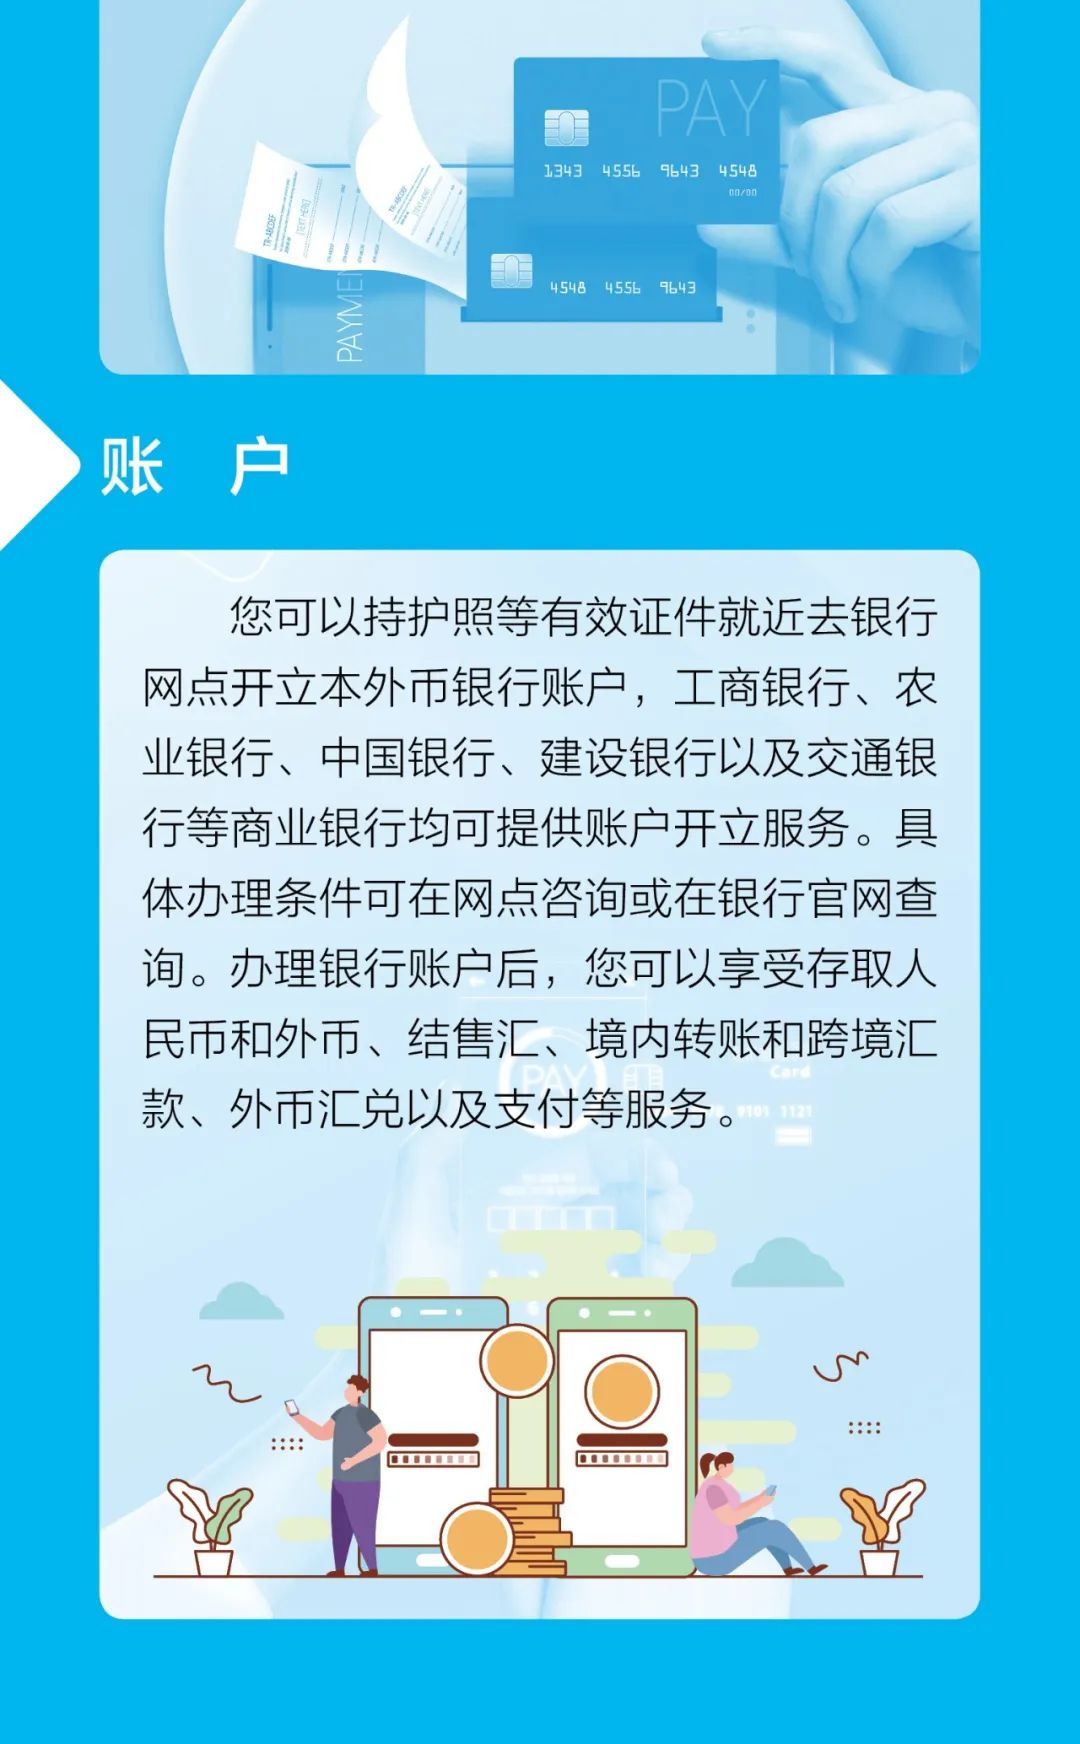 外籍来华人员支付指南（中文版）截图